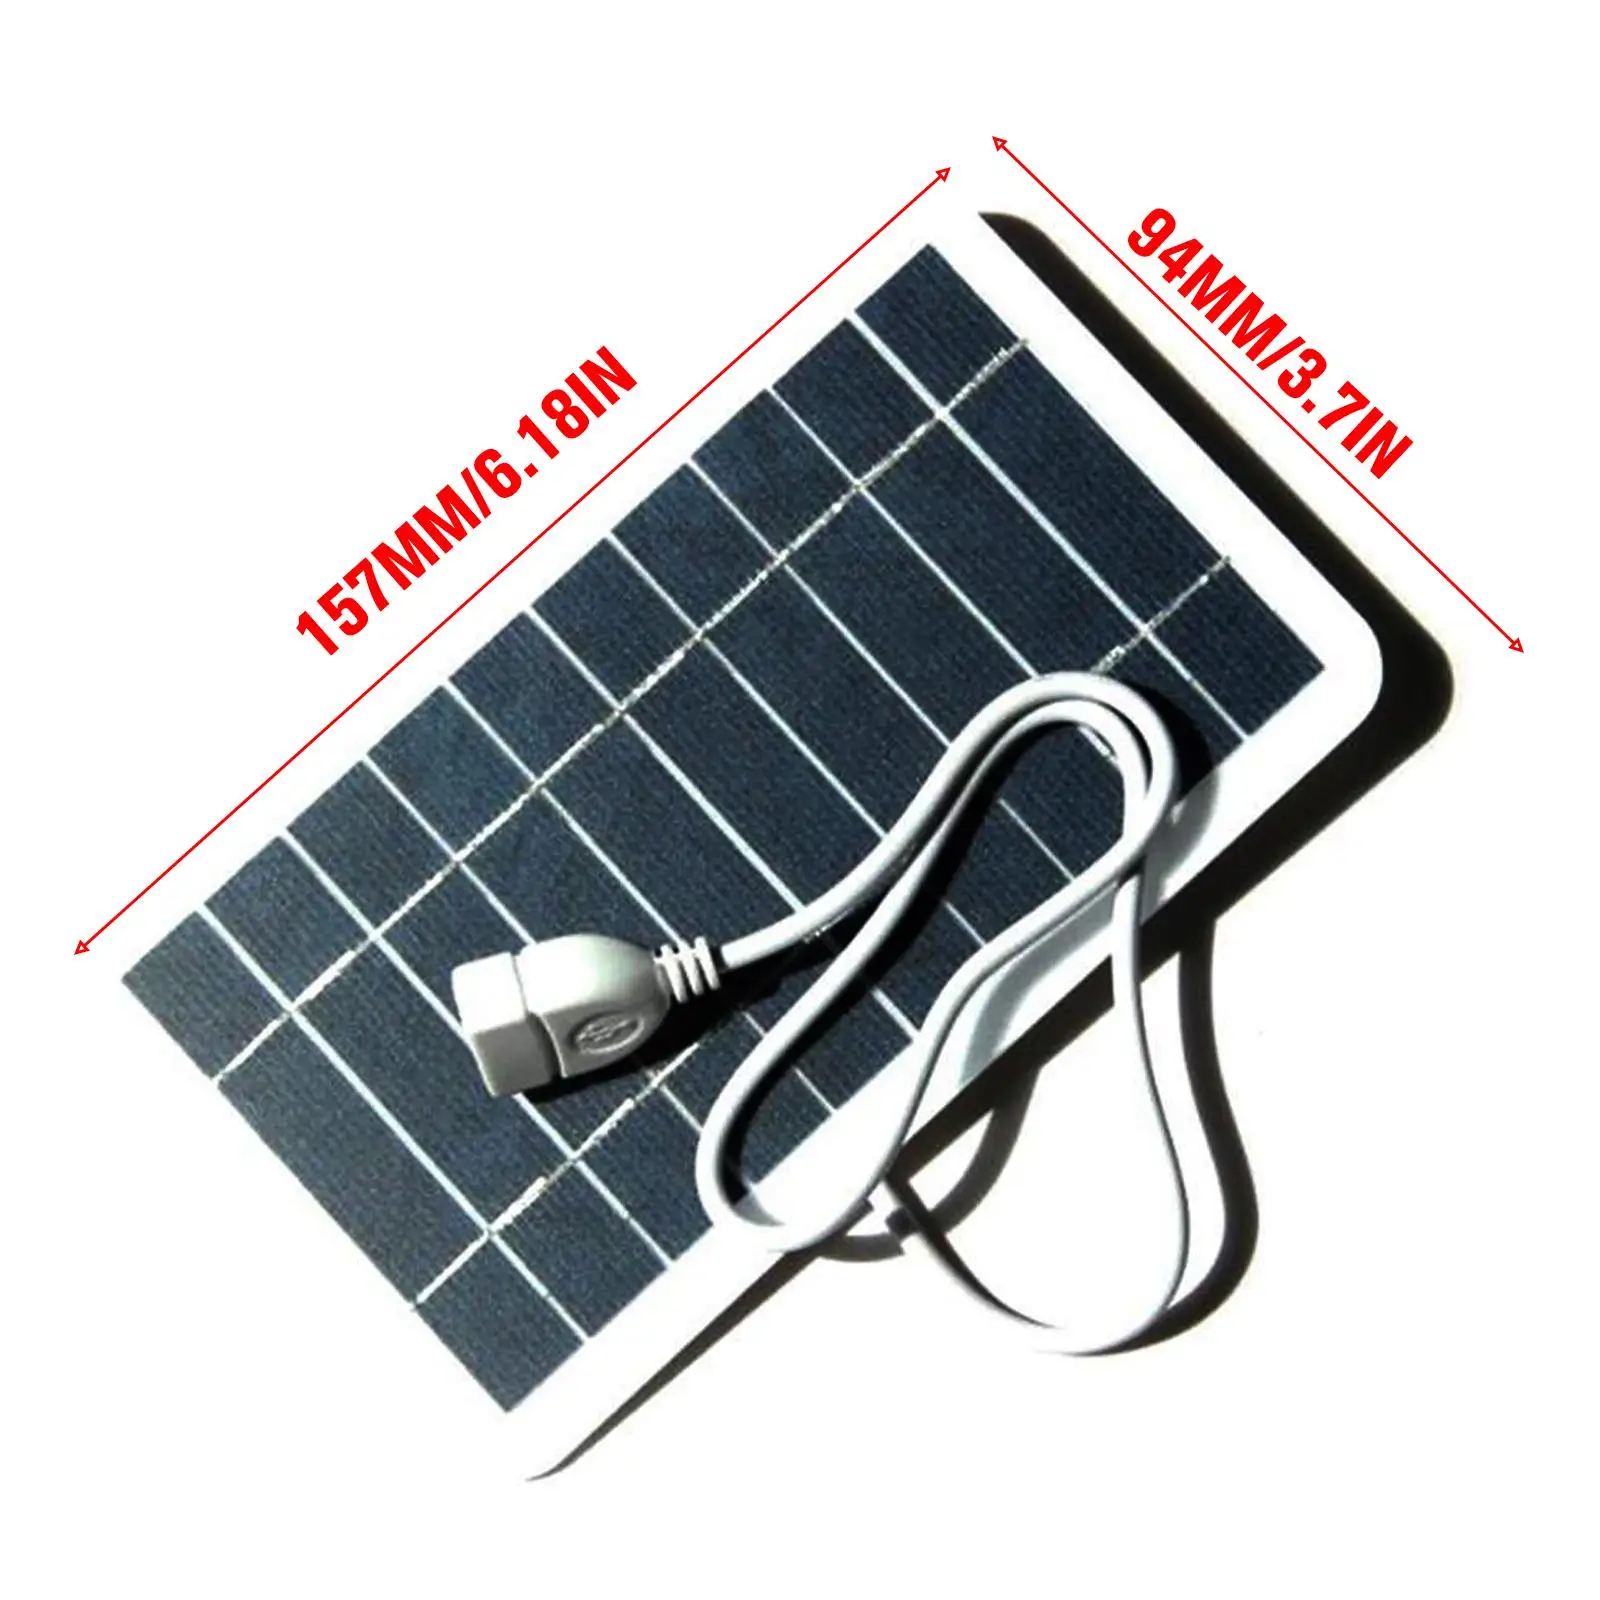 Panneau solaire portable 5V 2W, plaque solaire avec USB, charge sûre, stabilisateur, chargeur de batterie pour batterie externe, téléphone, camping en plein air, maison